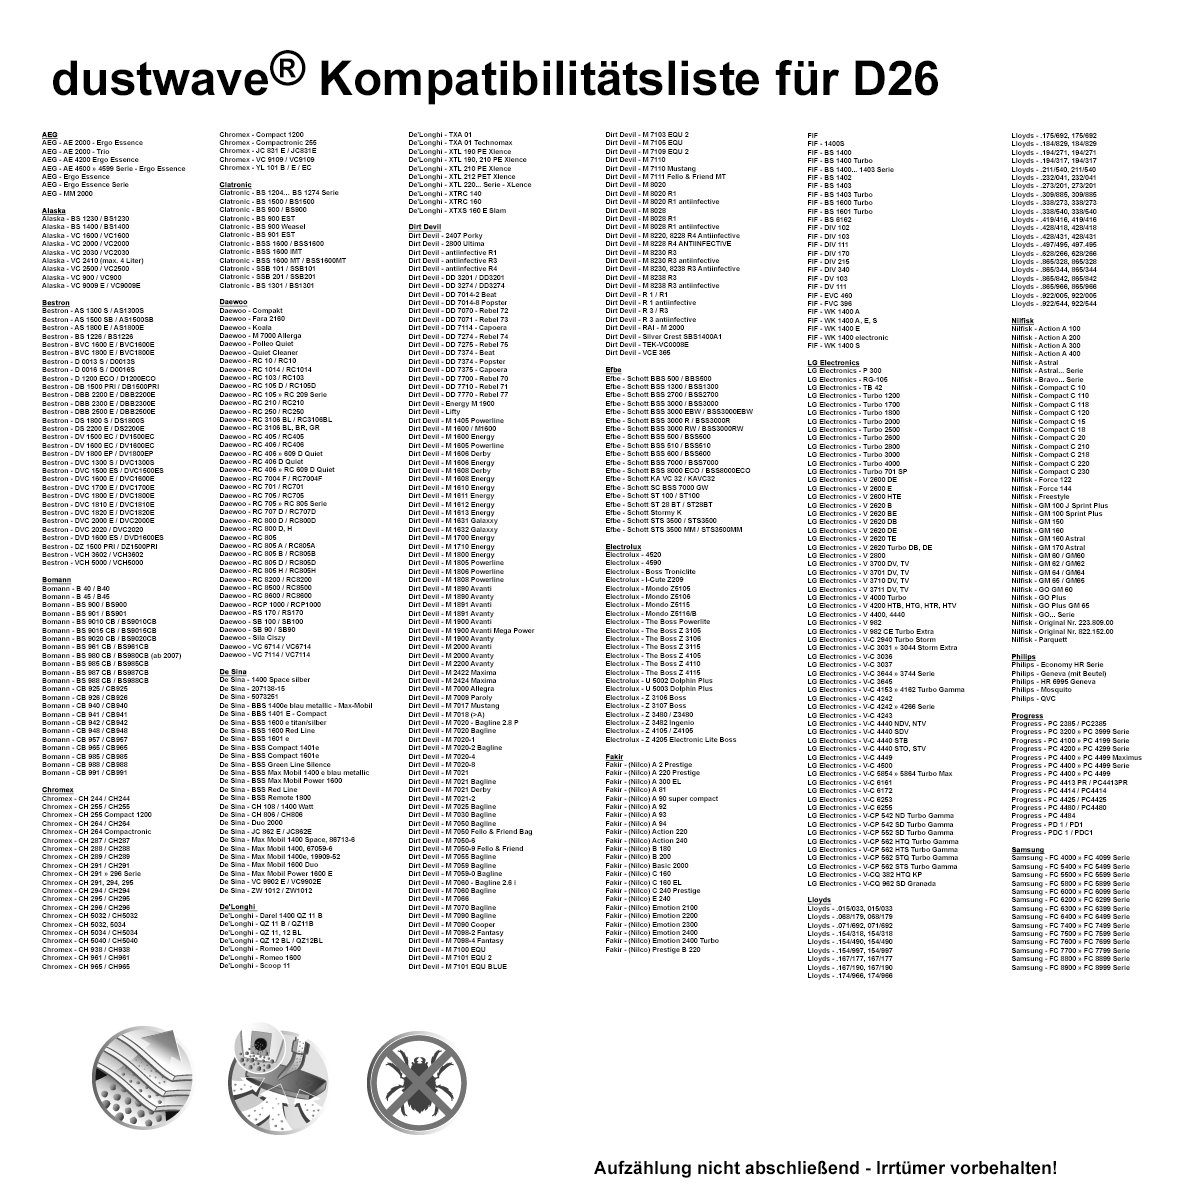 Dustwave Staubsaugerbeutel Test-Set, passend für 1 zuschneidbar) Amadis Hepa-Filter 15x15cm St., Test-Set, 1 Staubsaugerbeutel 120, 1 (ca. + 